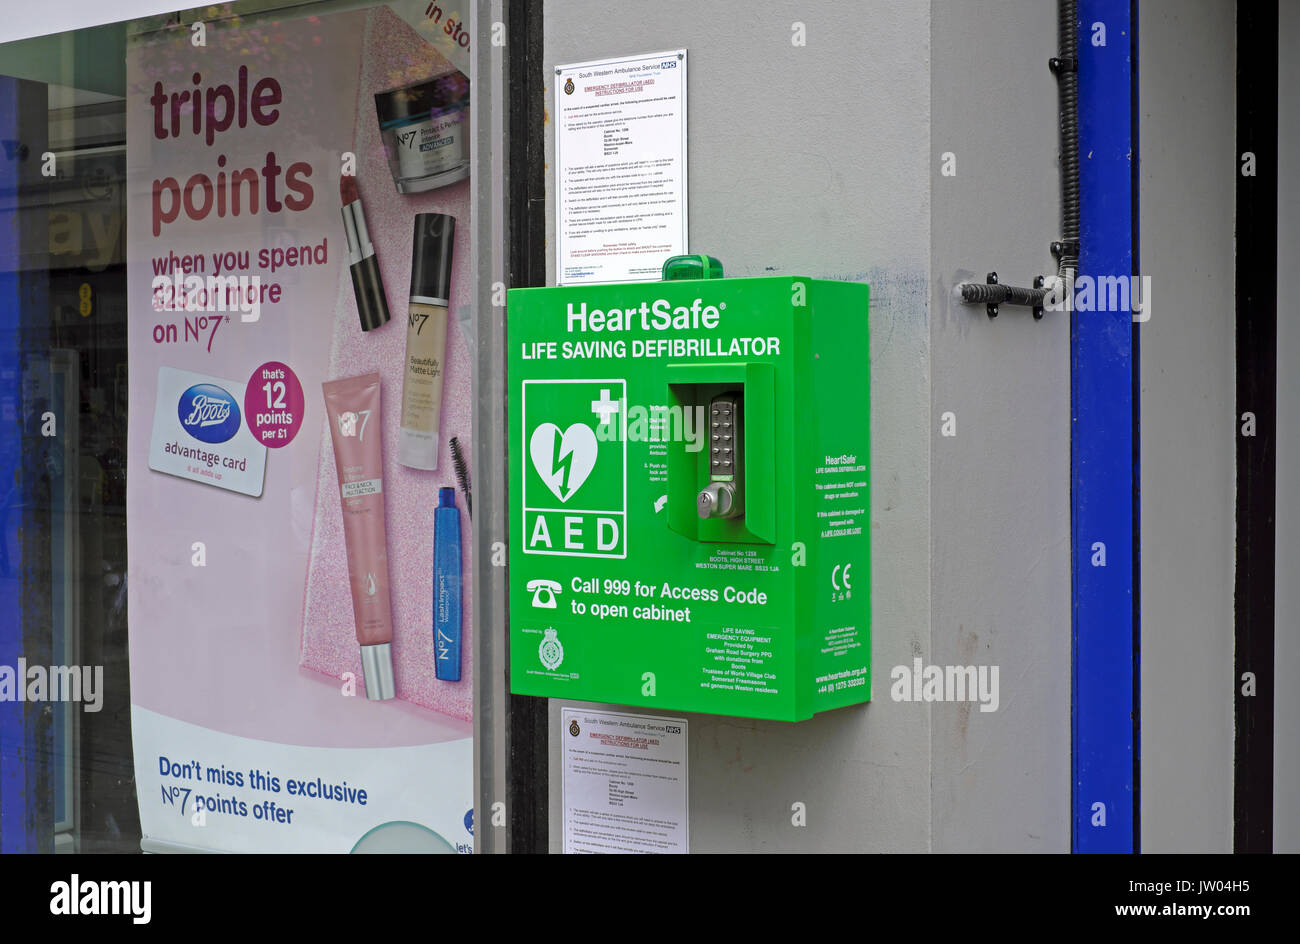 Un défibrillateur pour utilisation publique à l'extérieur de la pharmacie Boots à Weston-super-Mare, UK Banque D'Images